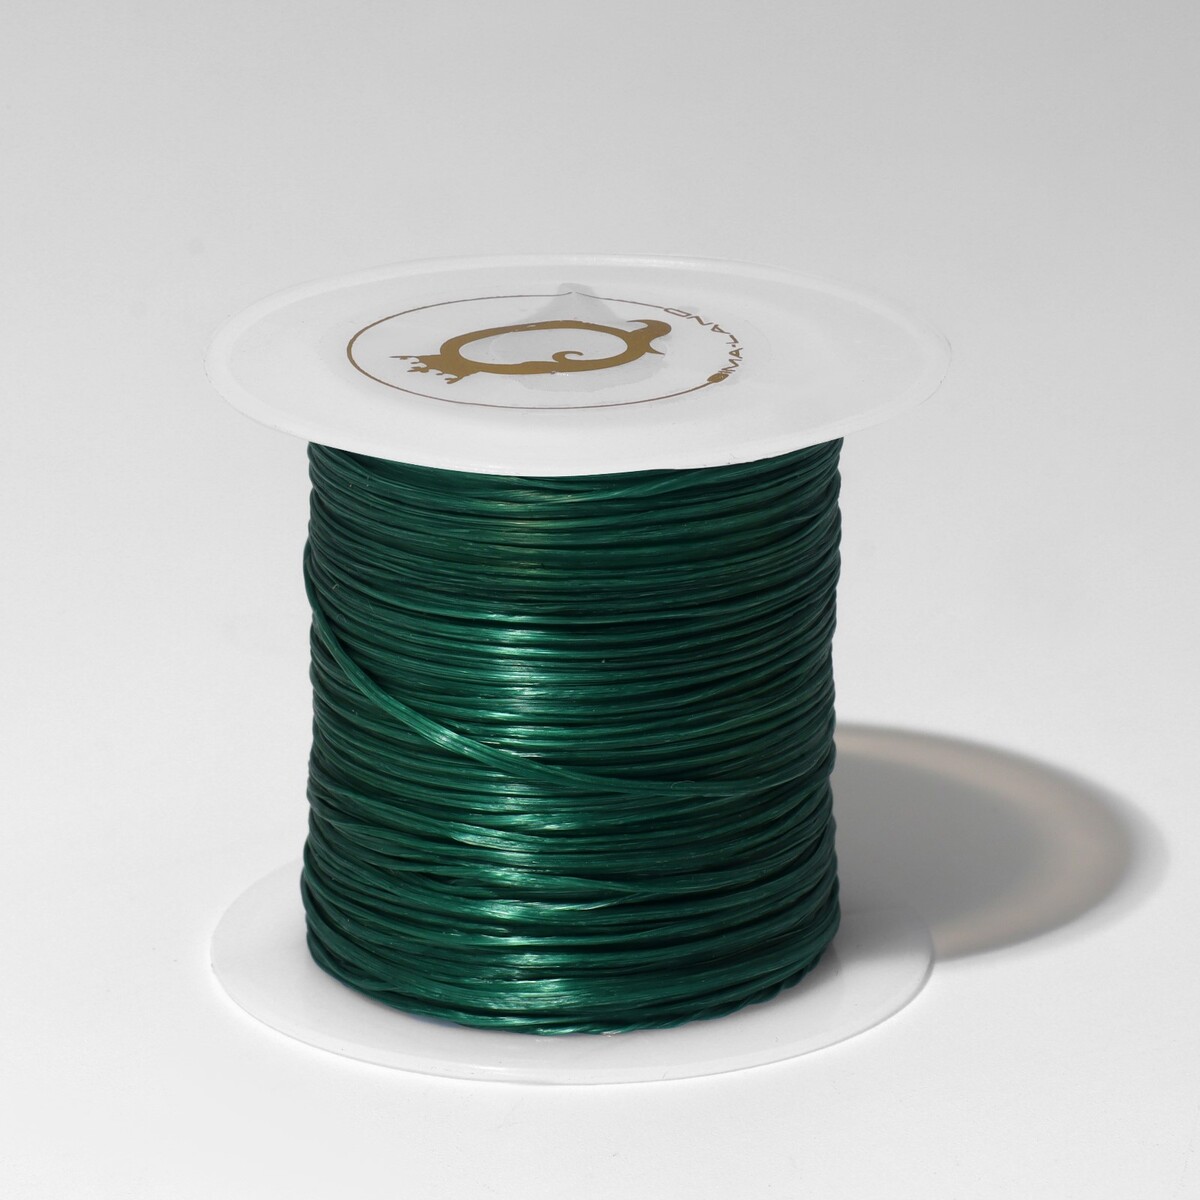 Нить силиконовая (резинка) d=0,5 мм, l=10 м (прочность 2250 денье), цвет темно-зеленый